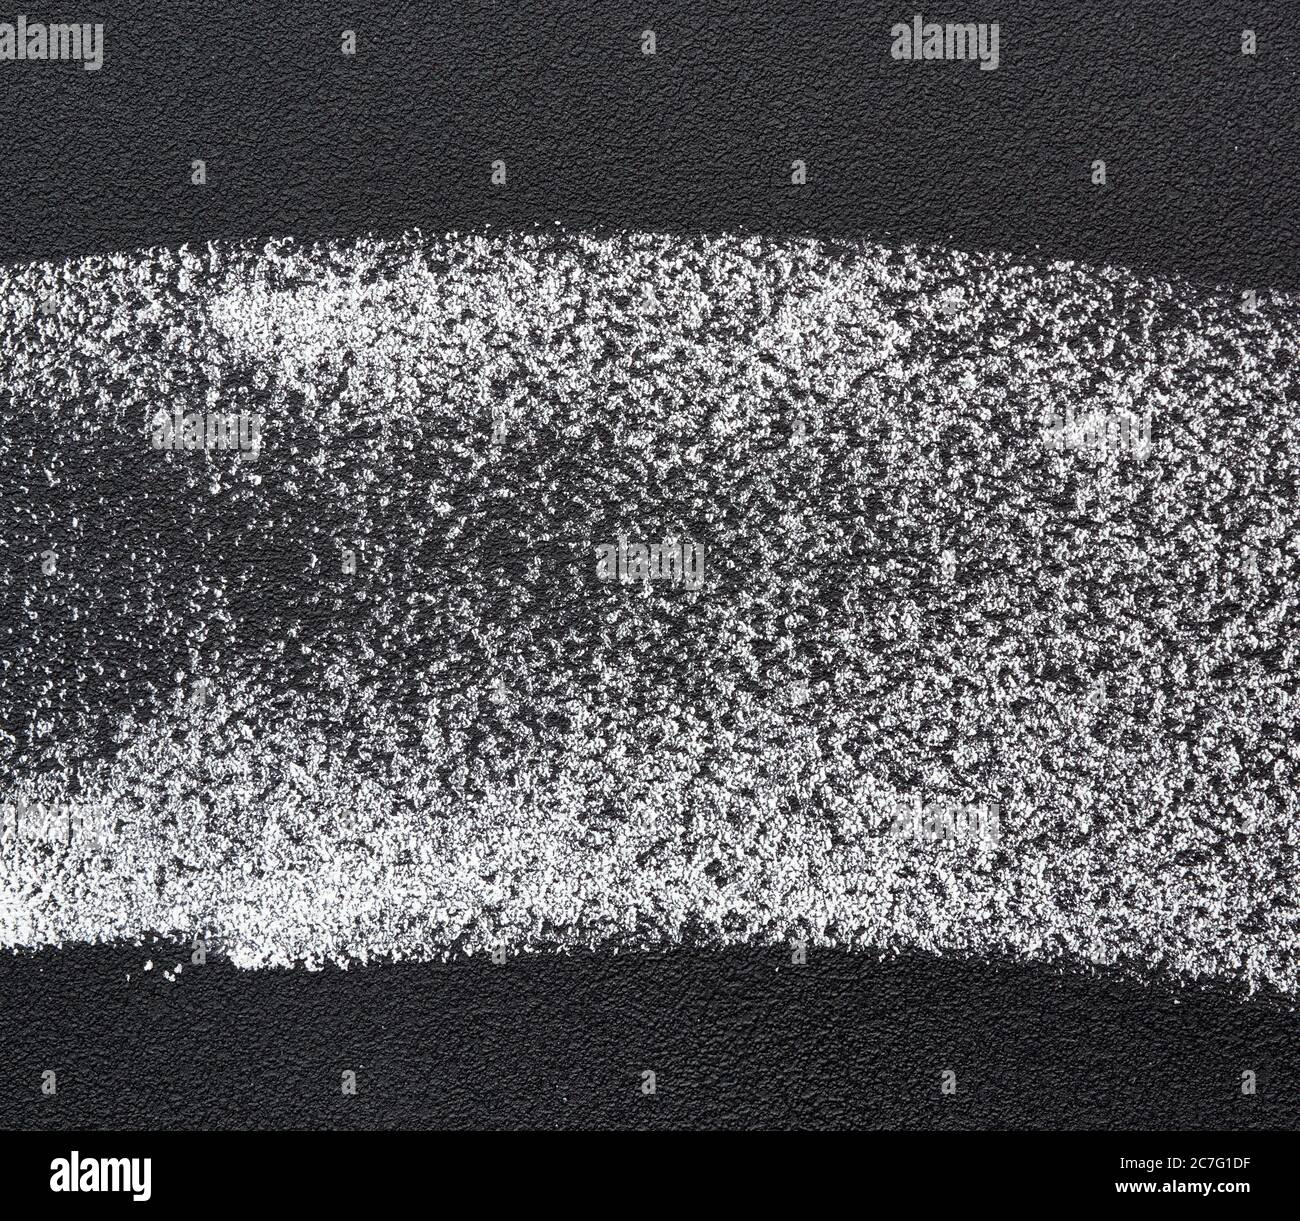 échantillon de craie blanche sur un tableau noir, gros plan Banque D'Images